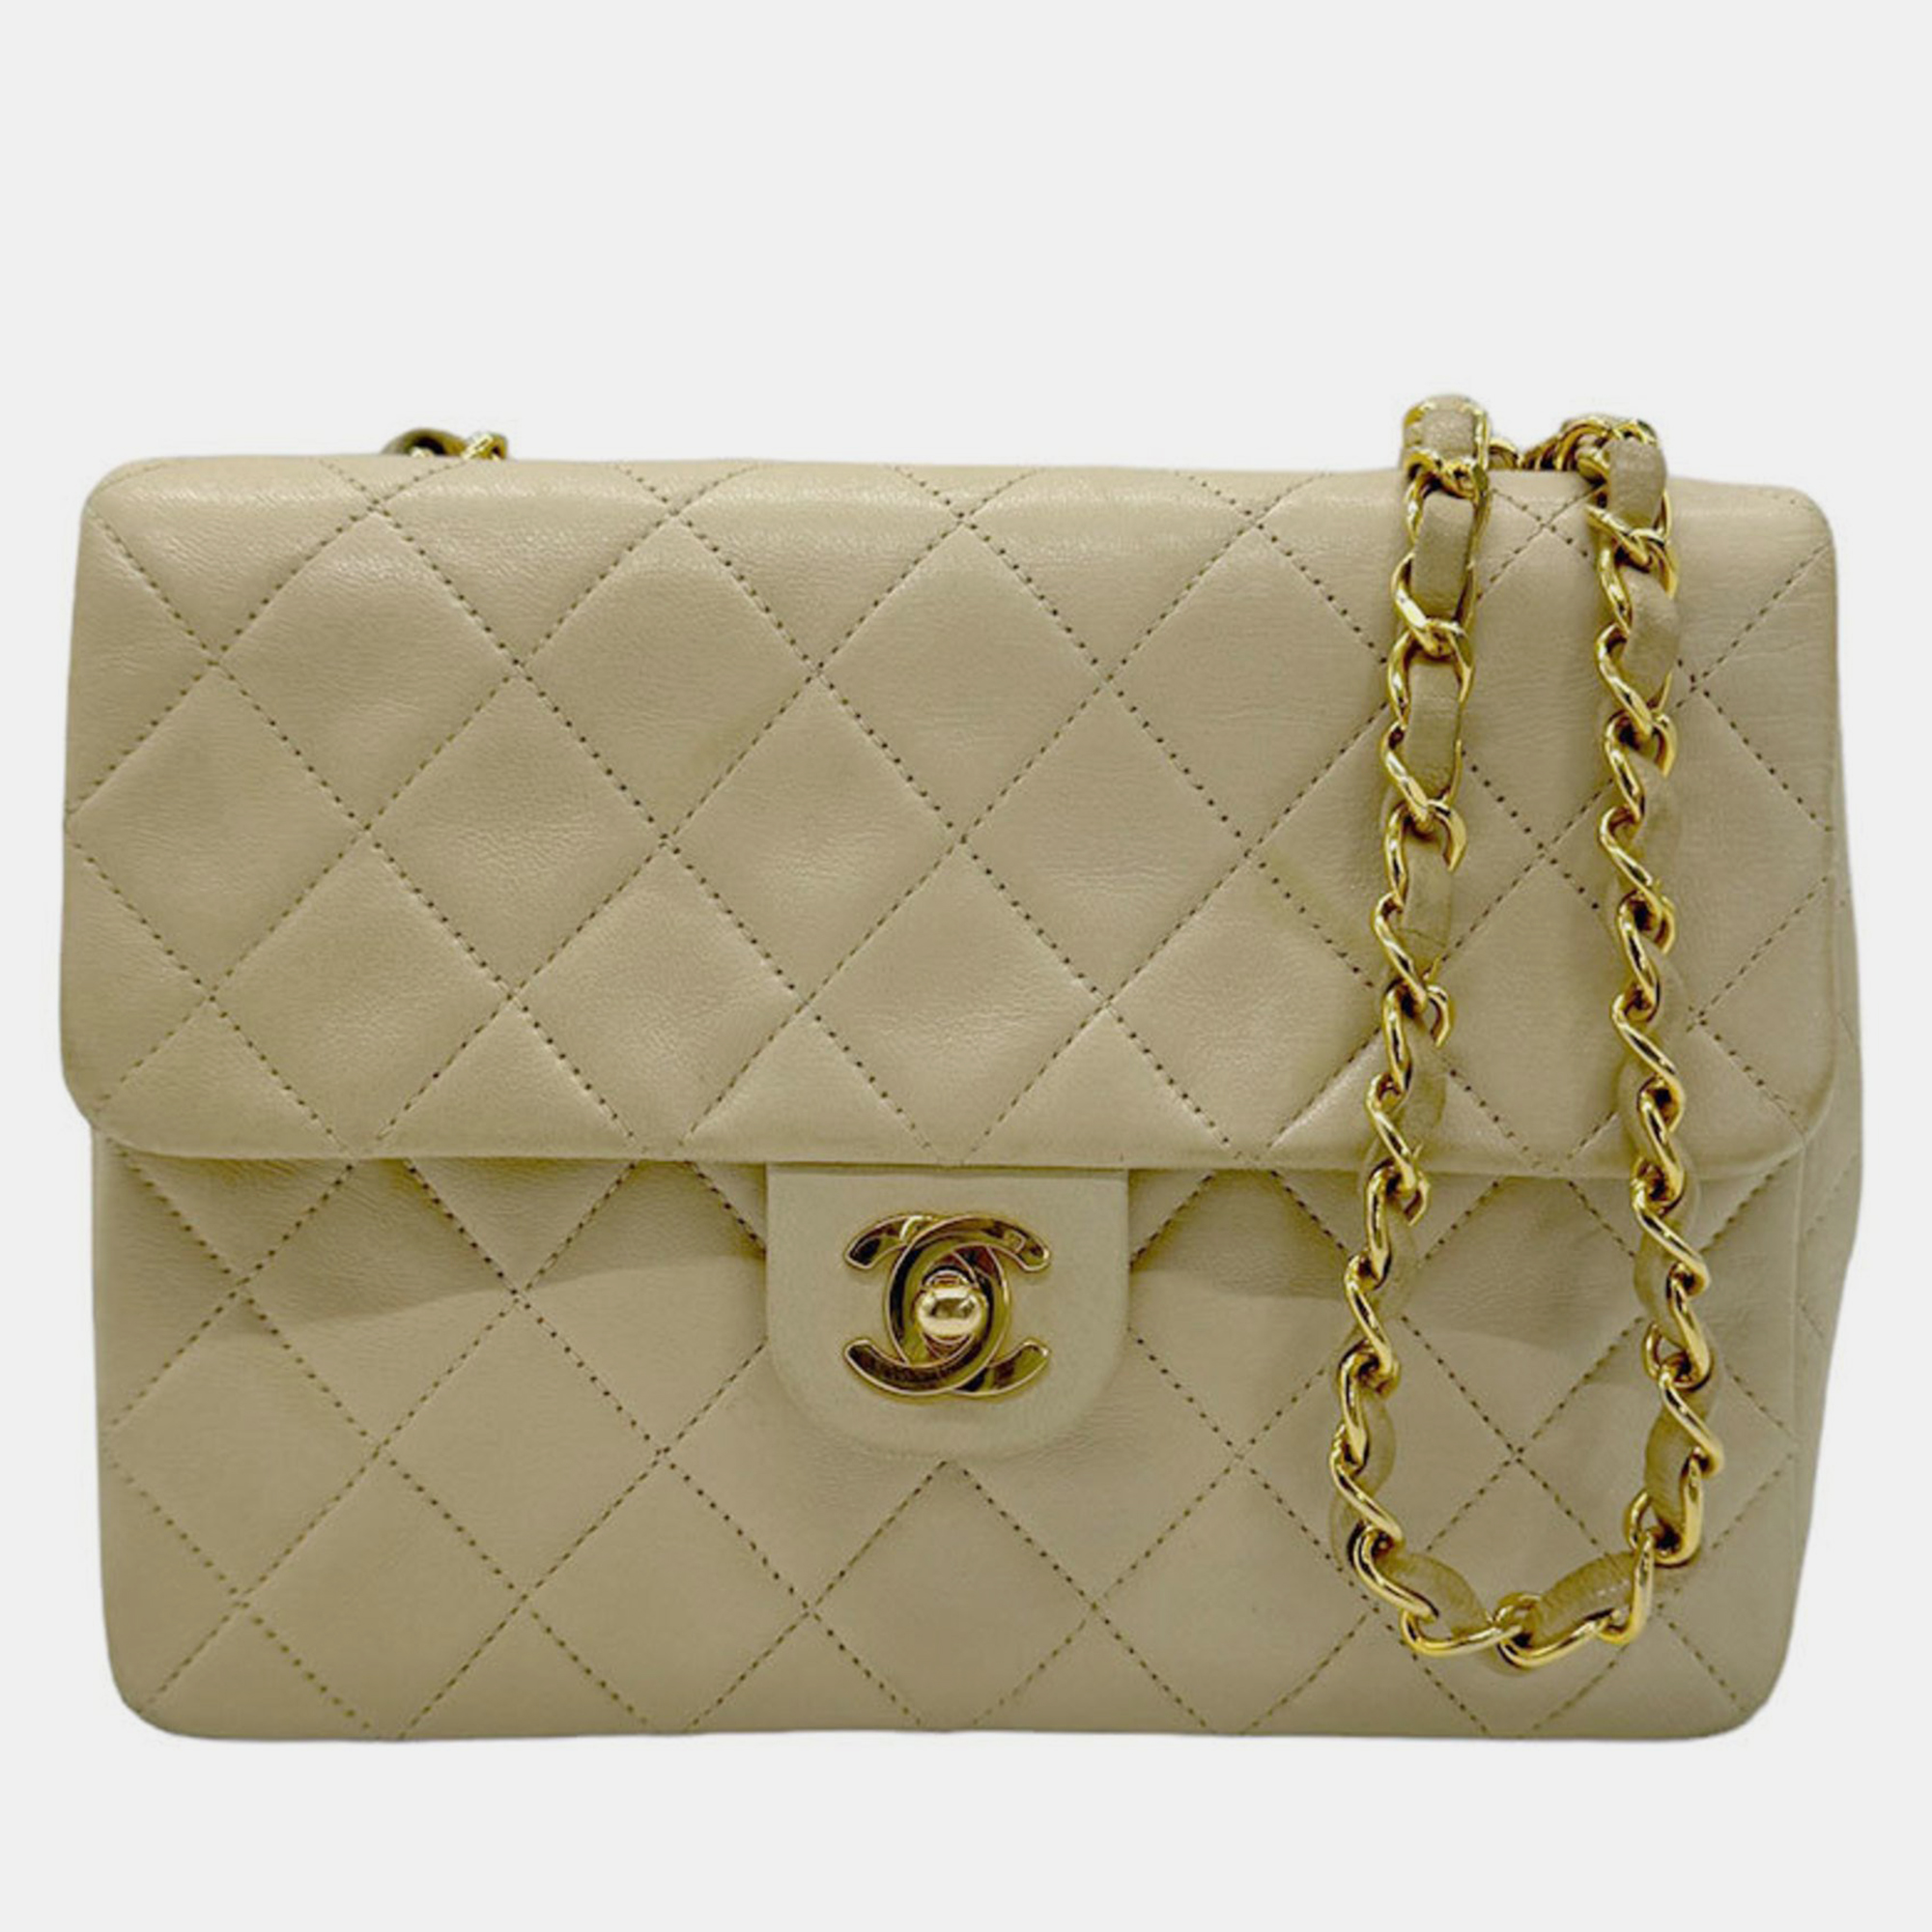 Chanel beige leather flap shoulder bag